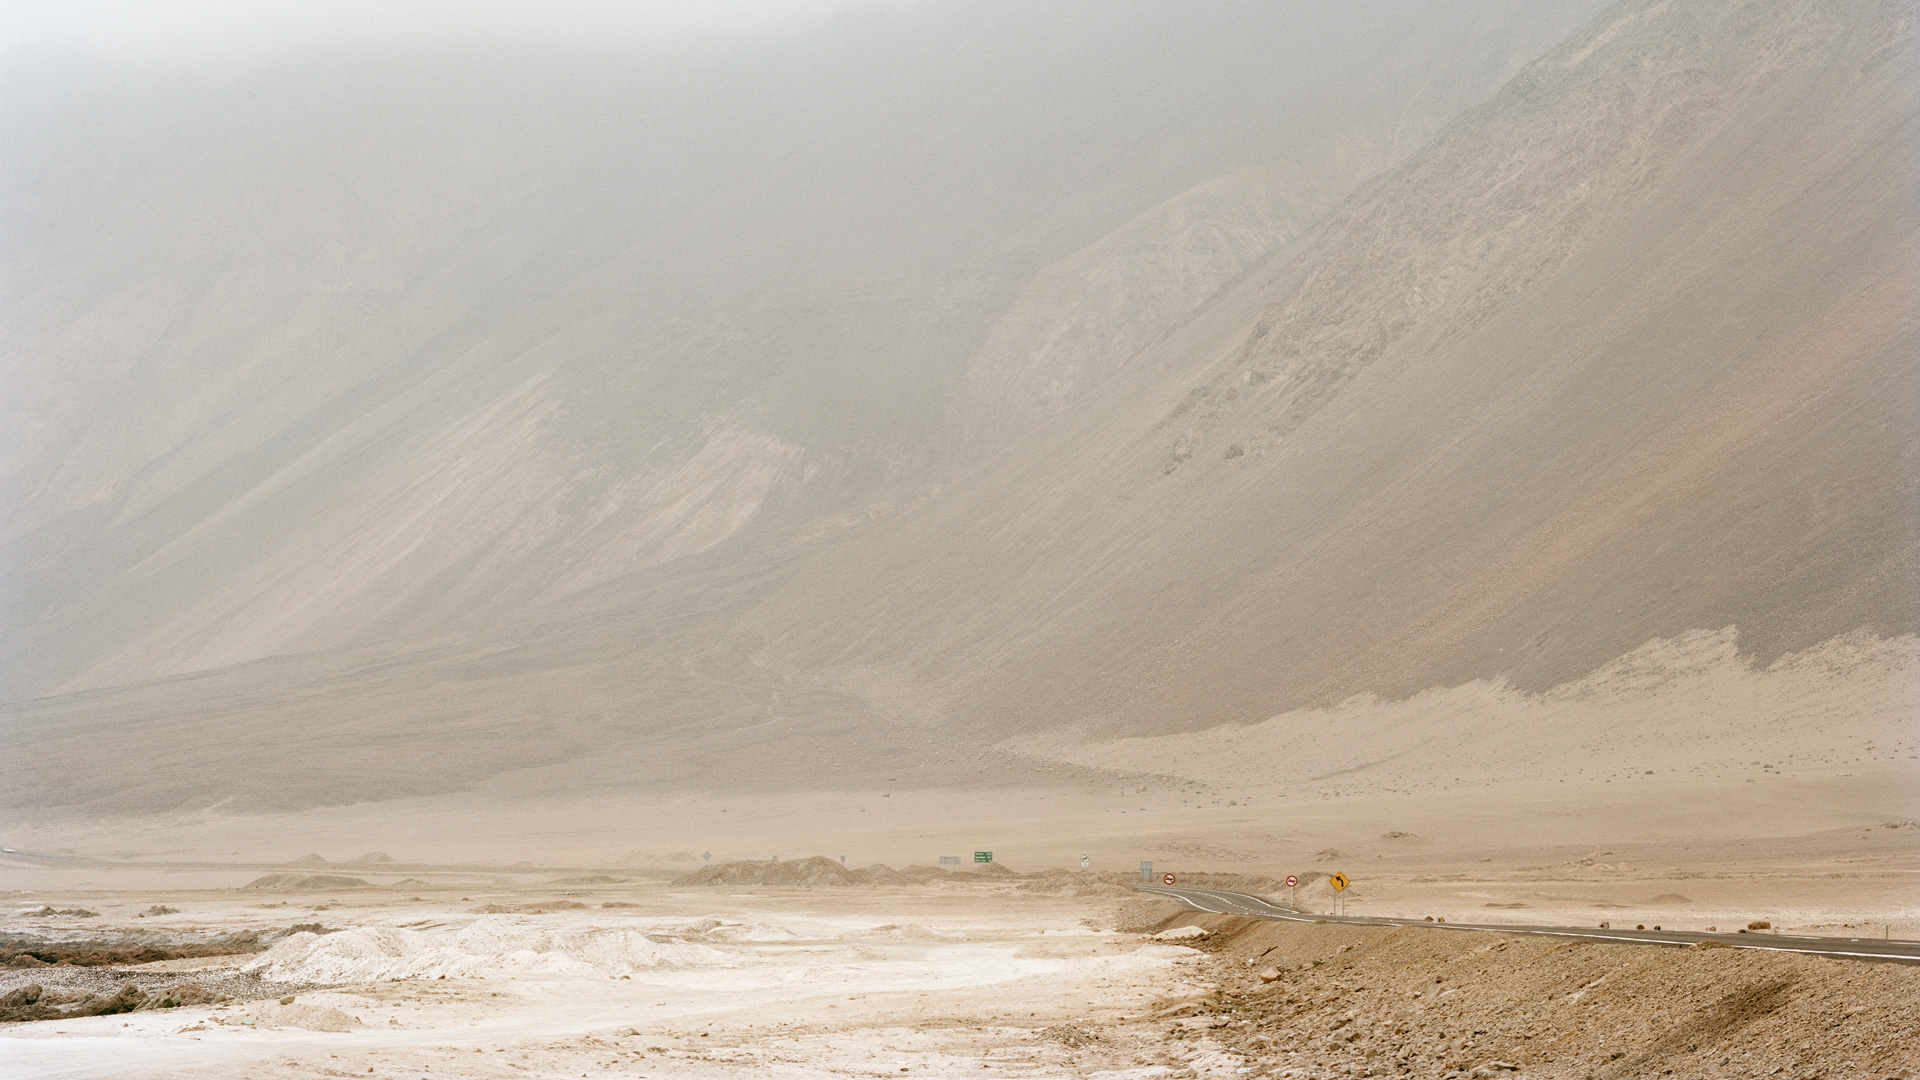 Sulphuric acid route. Route 1, Atacama Desert, Chile, 2012